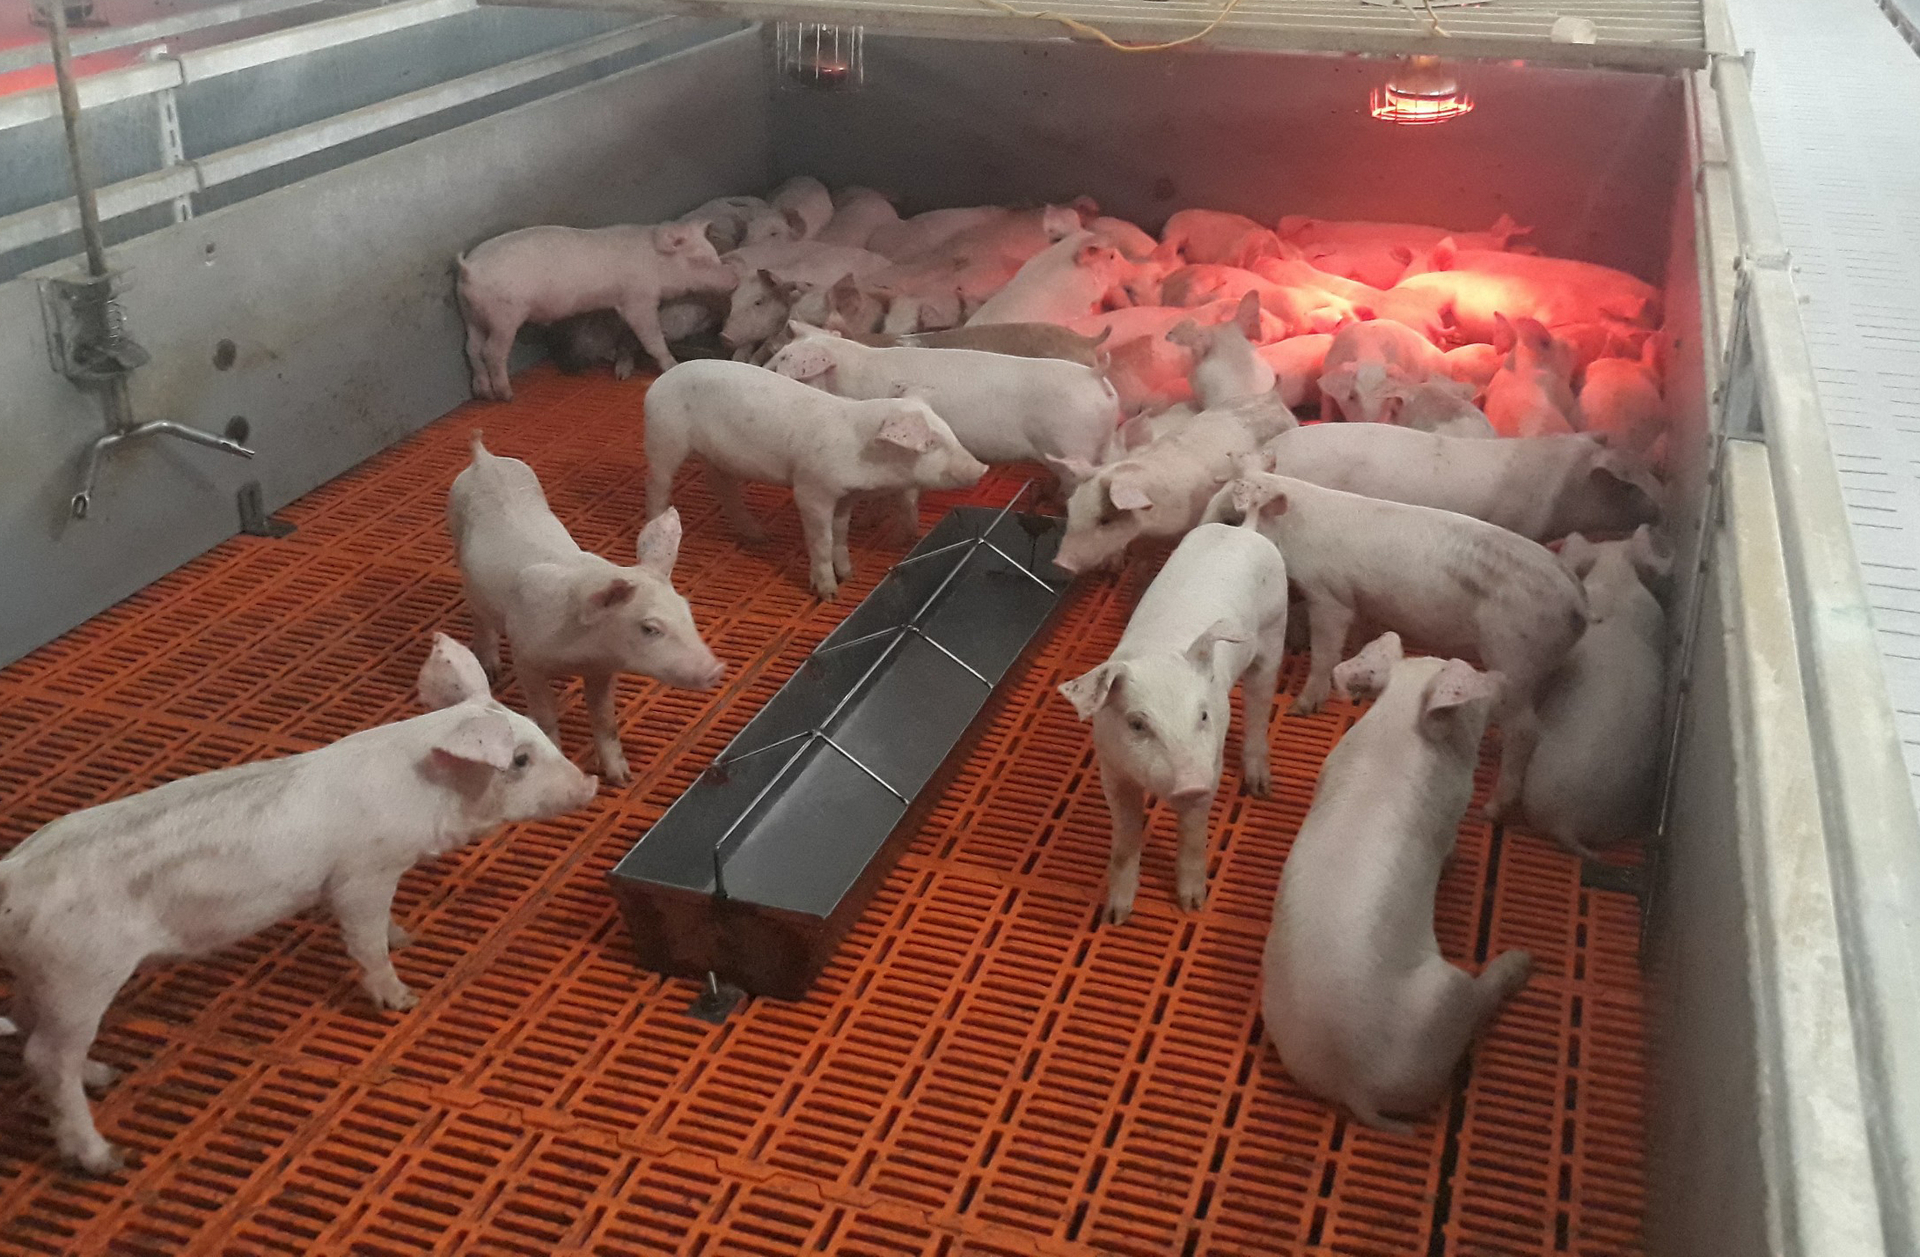 Chăn nuôi an toàn sinh học được xem là vấn đề sống còn của người nuôi lợn giai đoạn hiện nay. Ảnh: Quang Dũng.